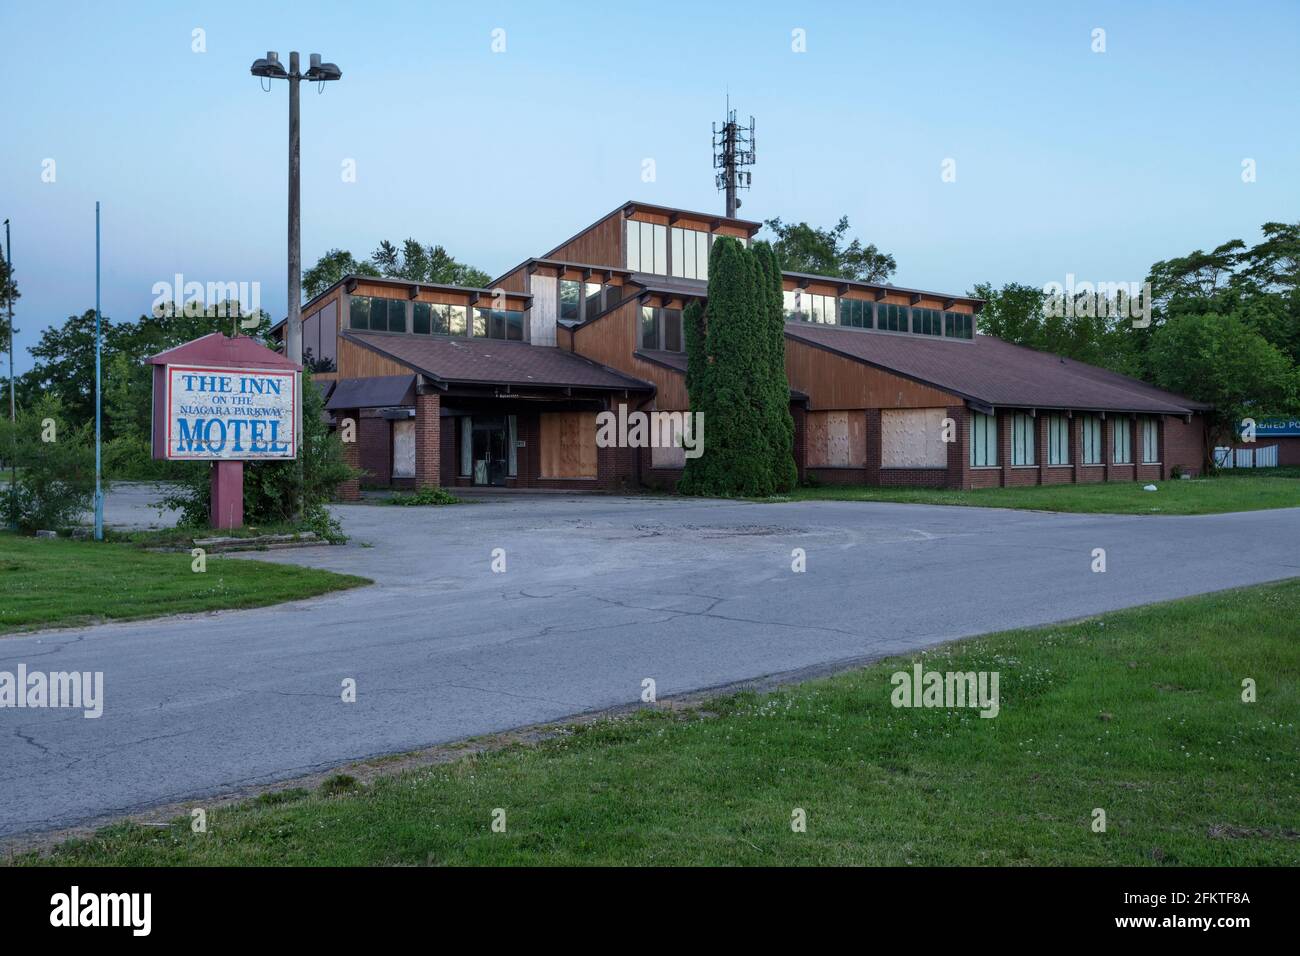 L'auberge abandonnée sur le Niagara Parkway Motel à Chippawa, Niagara Falls, Ontario, Canada. Ce bâtiment a été démoli et n'existe plus. Banque D'Images